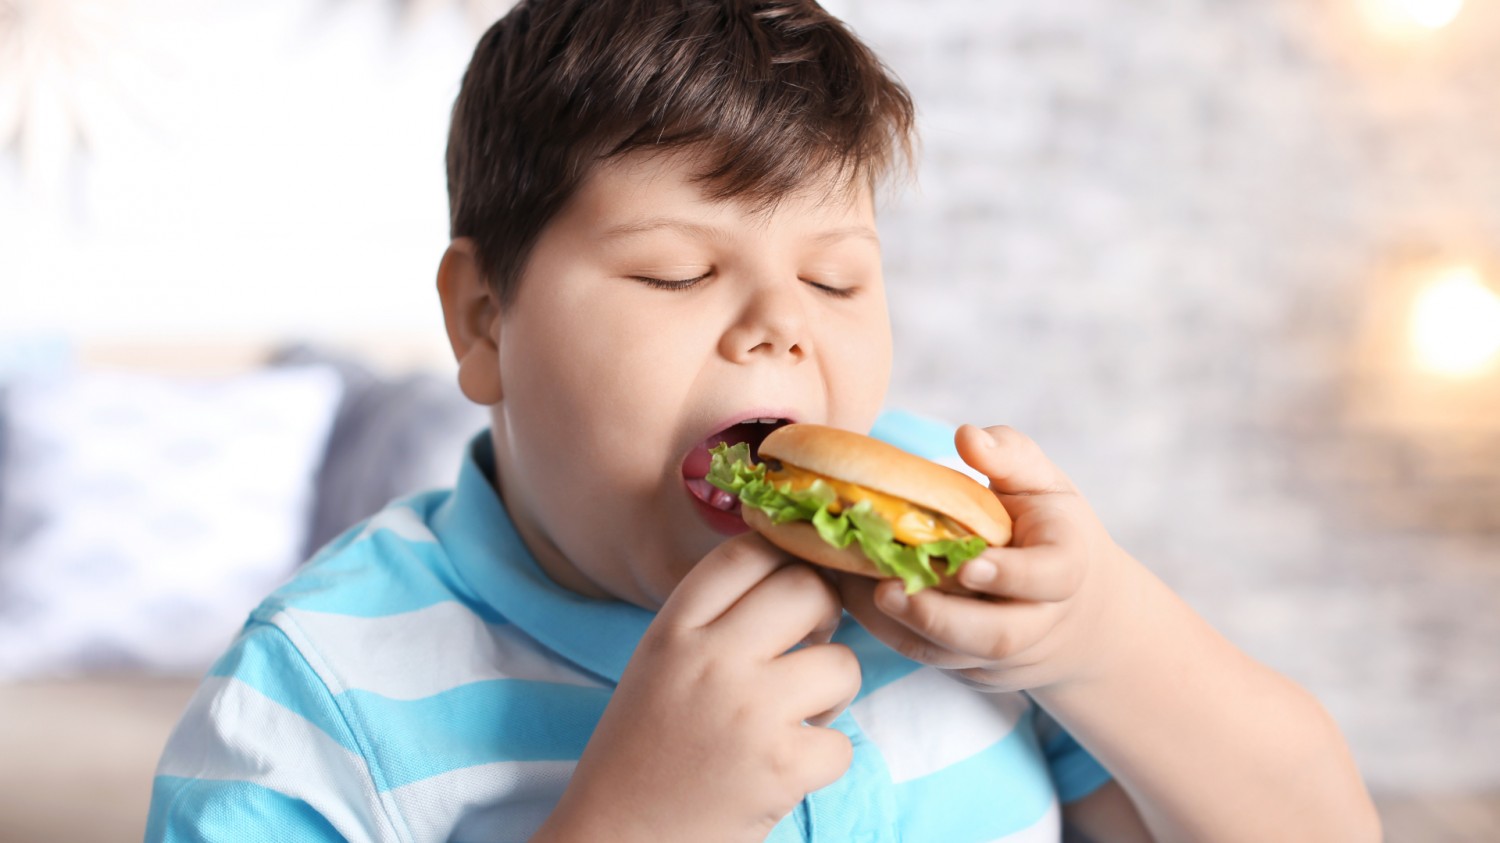 Járványként terjed a gyermekkori elhízás